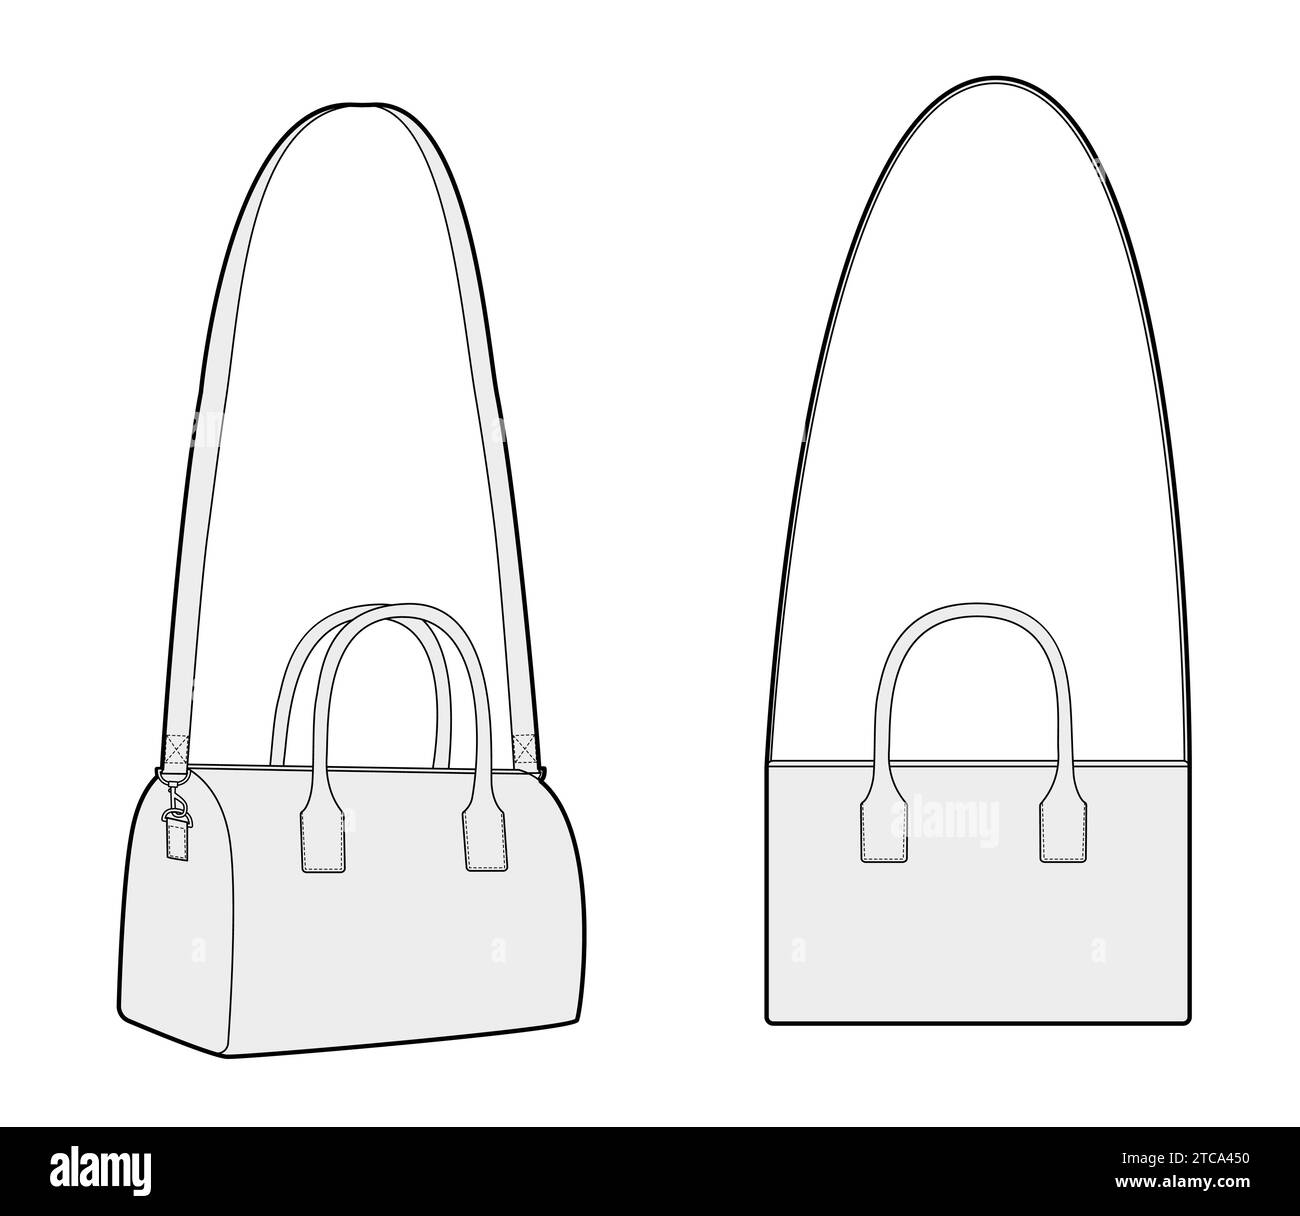 Shoulder bag svg Vectors & Illustrations for Free Download | Freepik